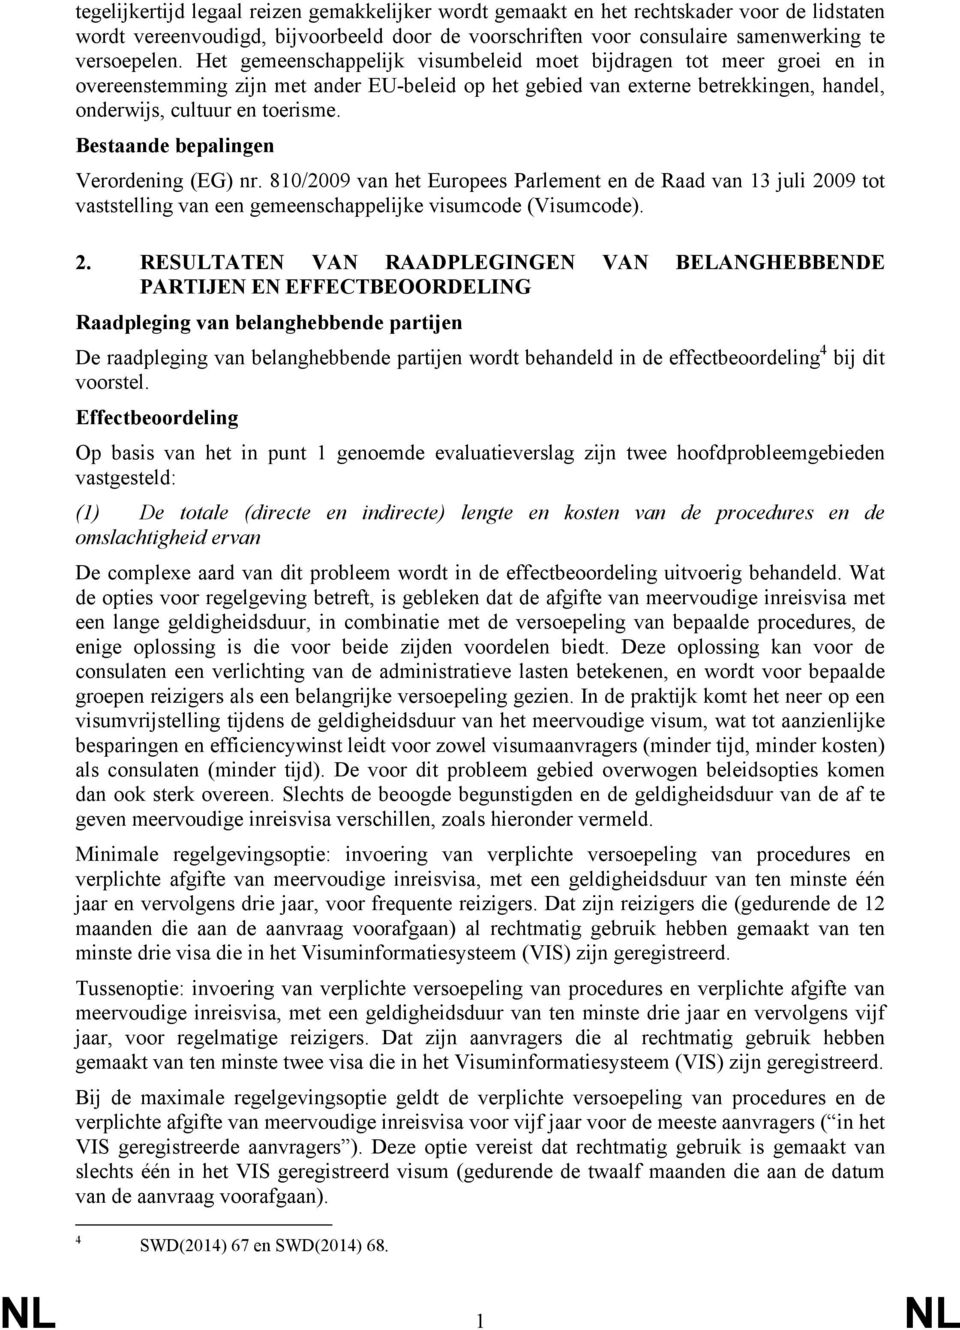 Bestaande bepalingen Verordening (EG) nr. 810/2009 van het Europees Parlement en de Raad van 13 juli 20